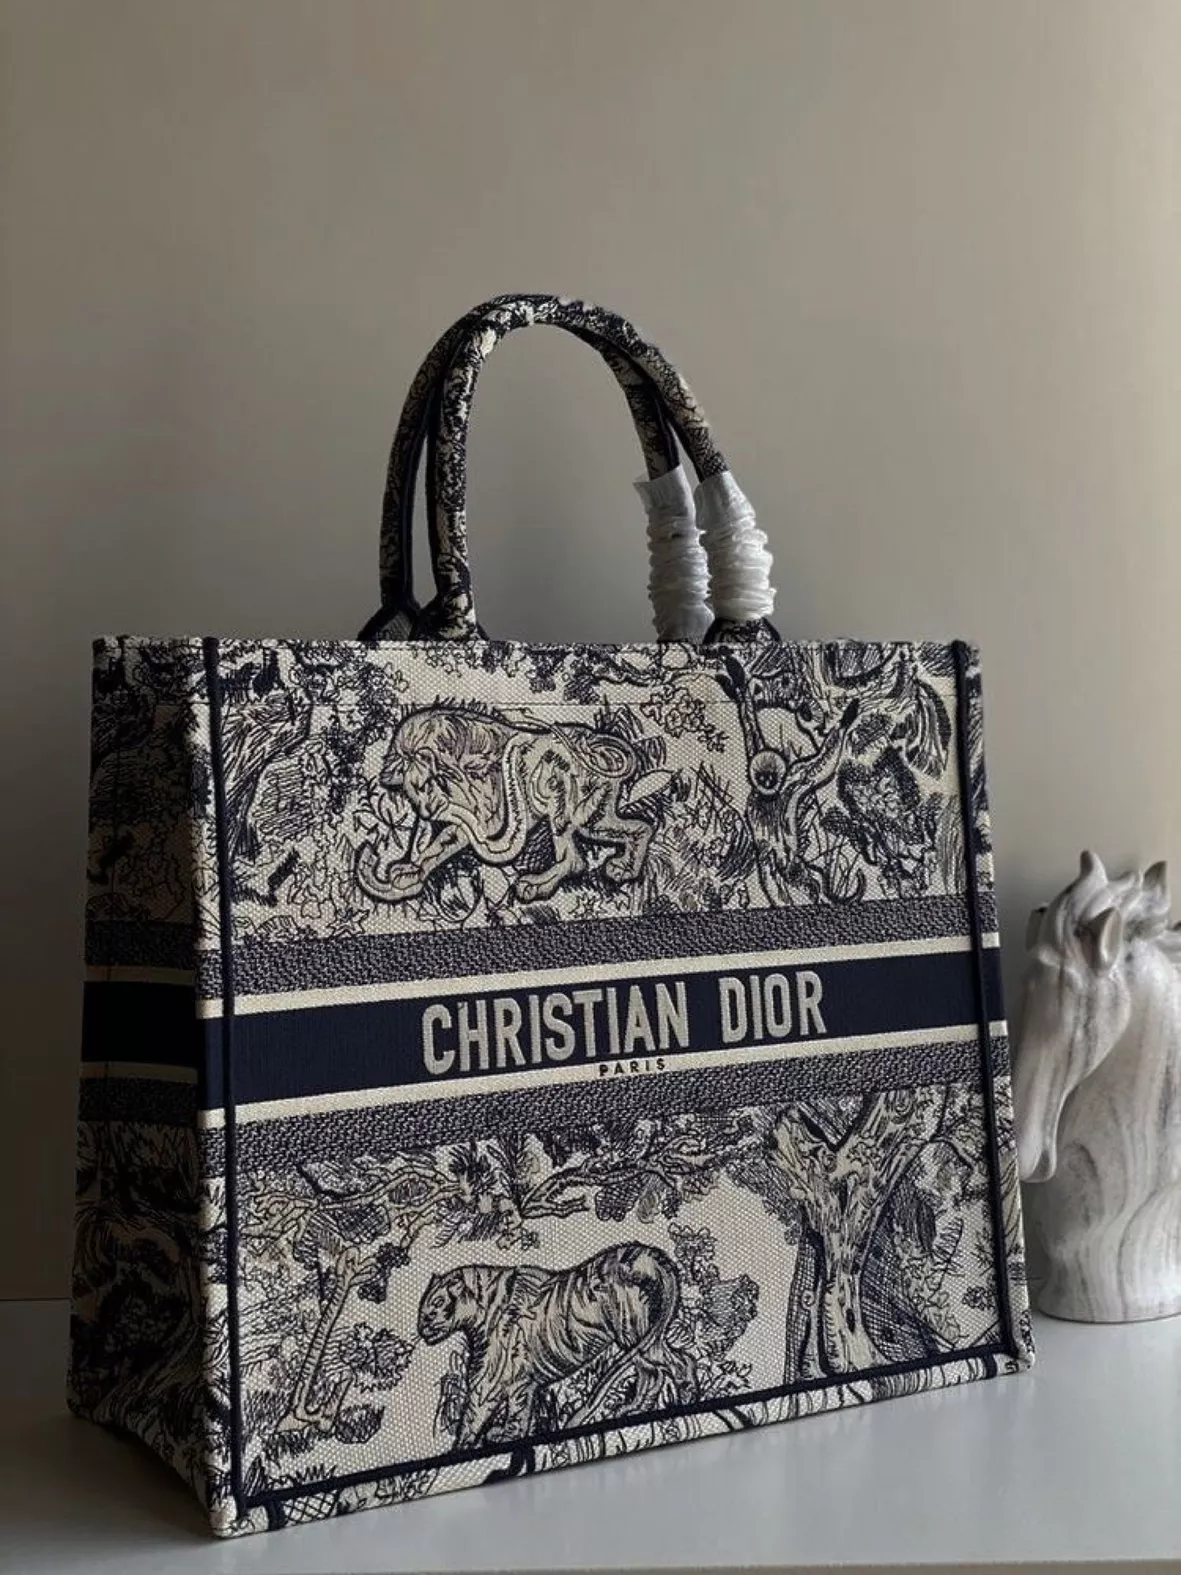 Dior Shoulder Bags saddle bag … curated on LTK